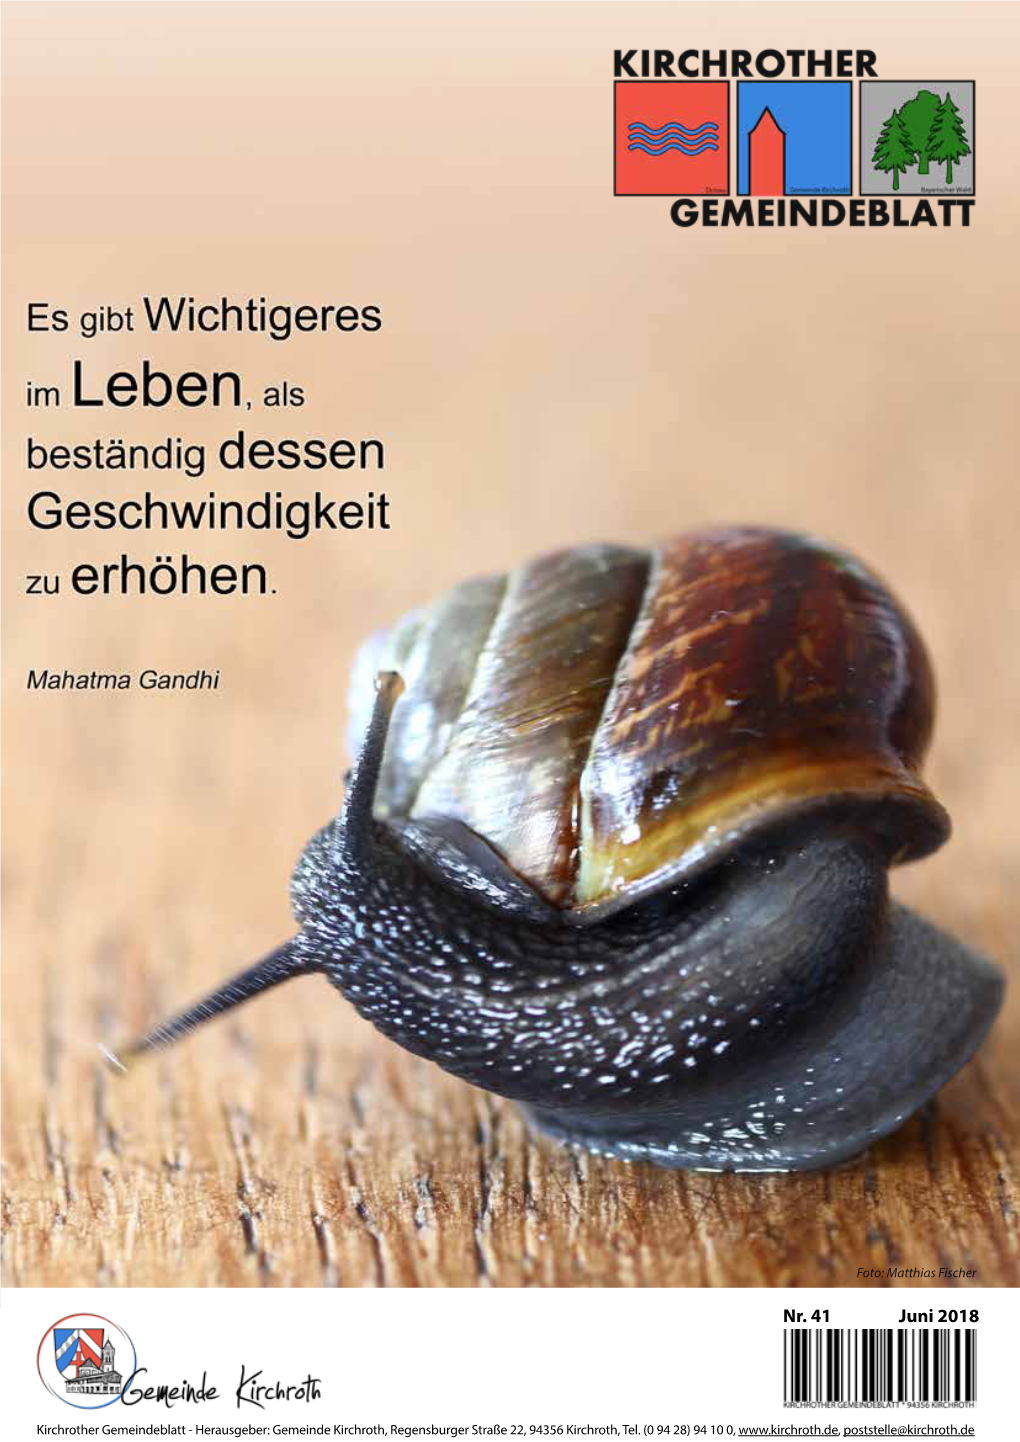 Gemeindeblatt Nr. 41 (Juni 2018)